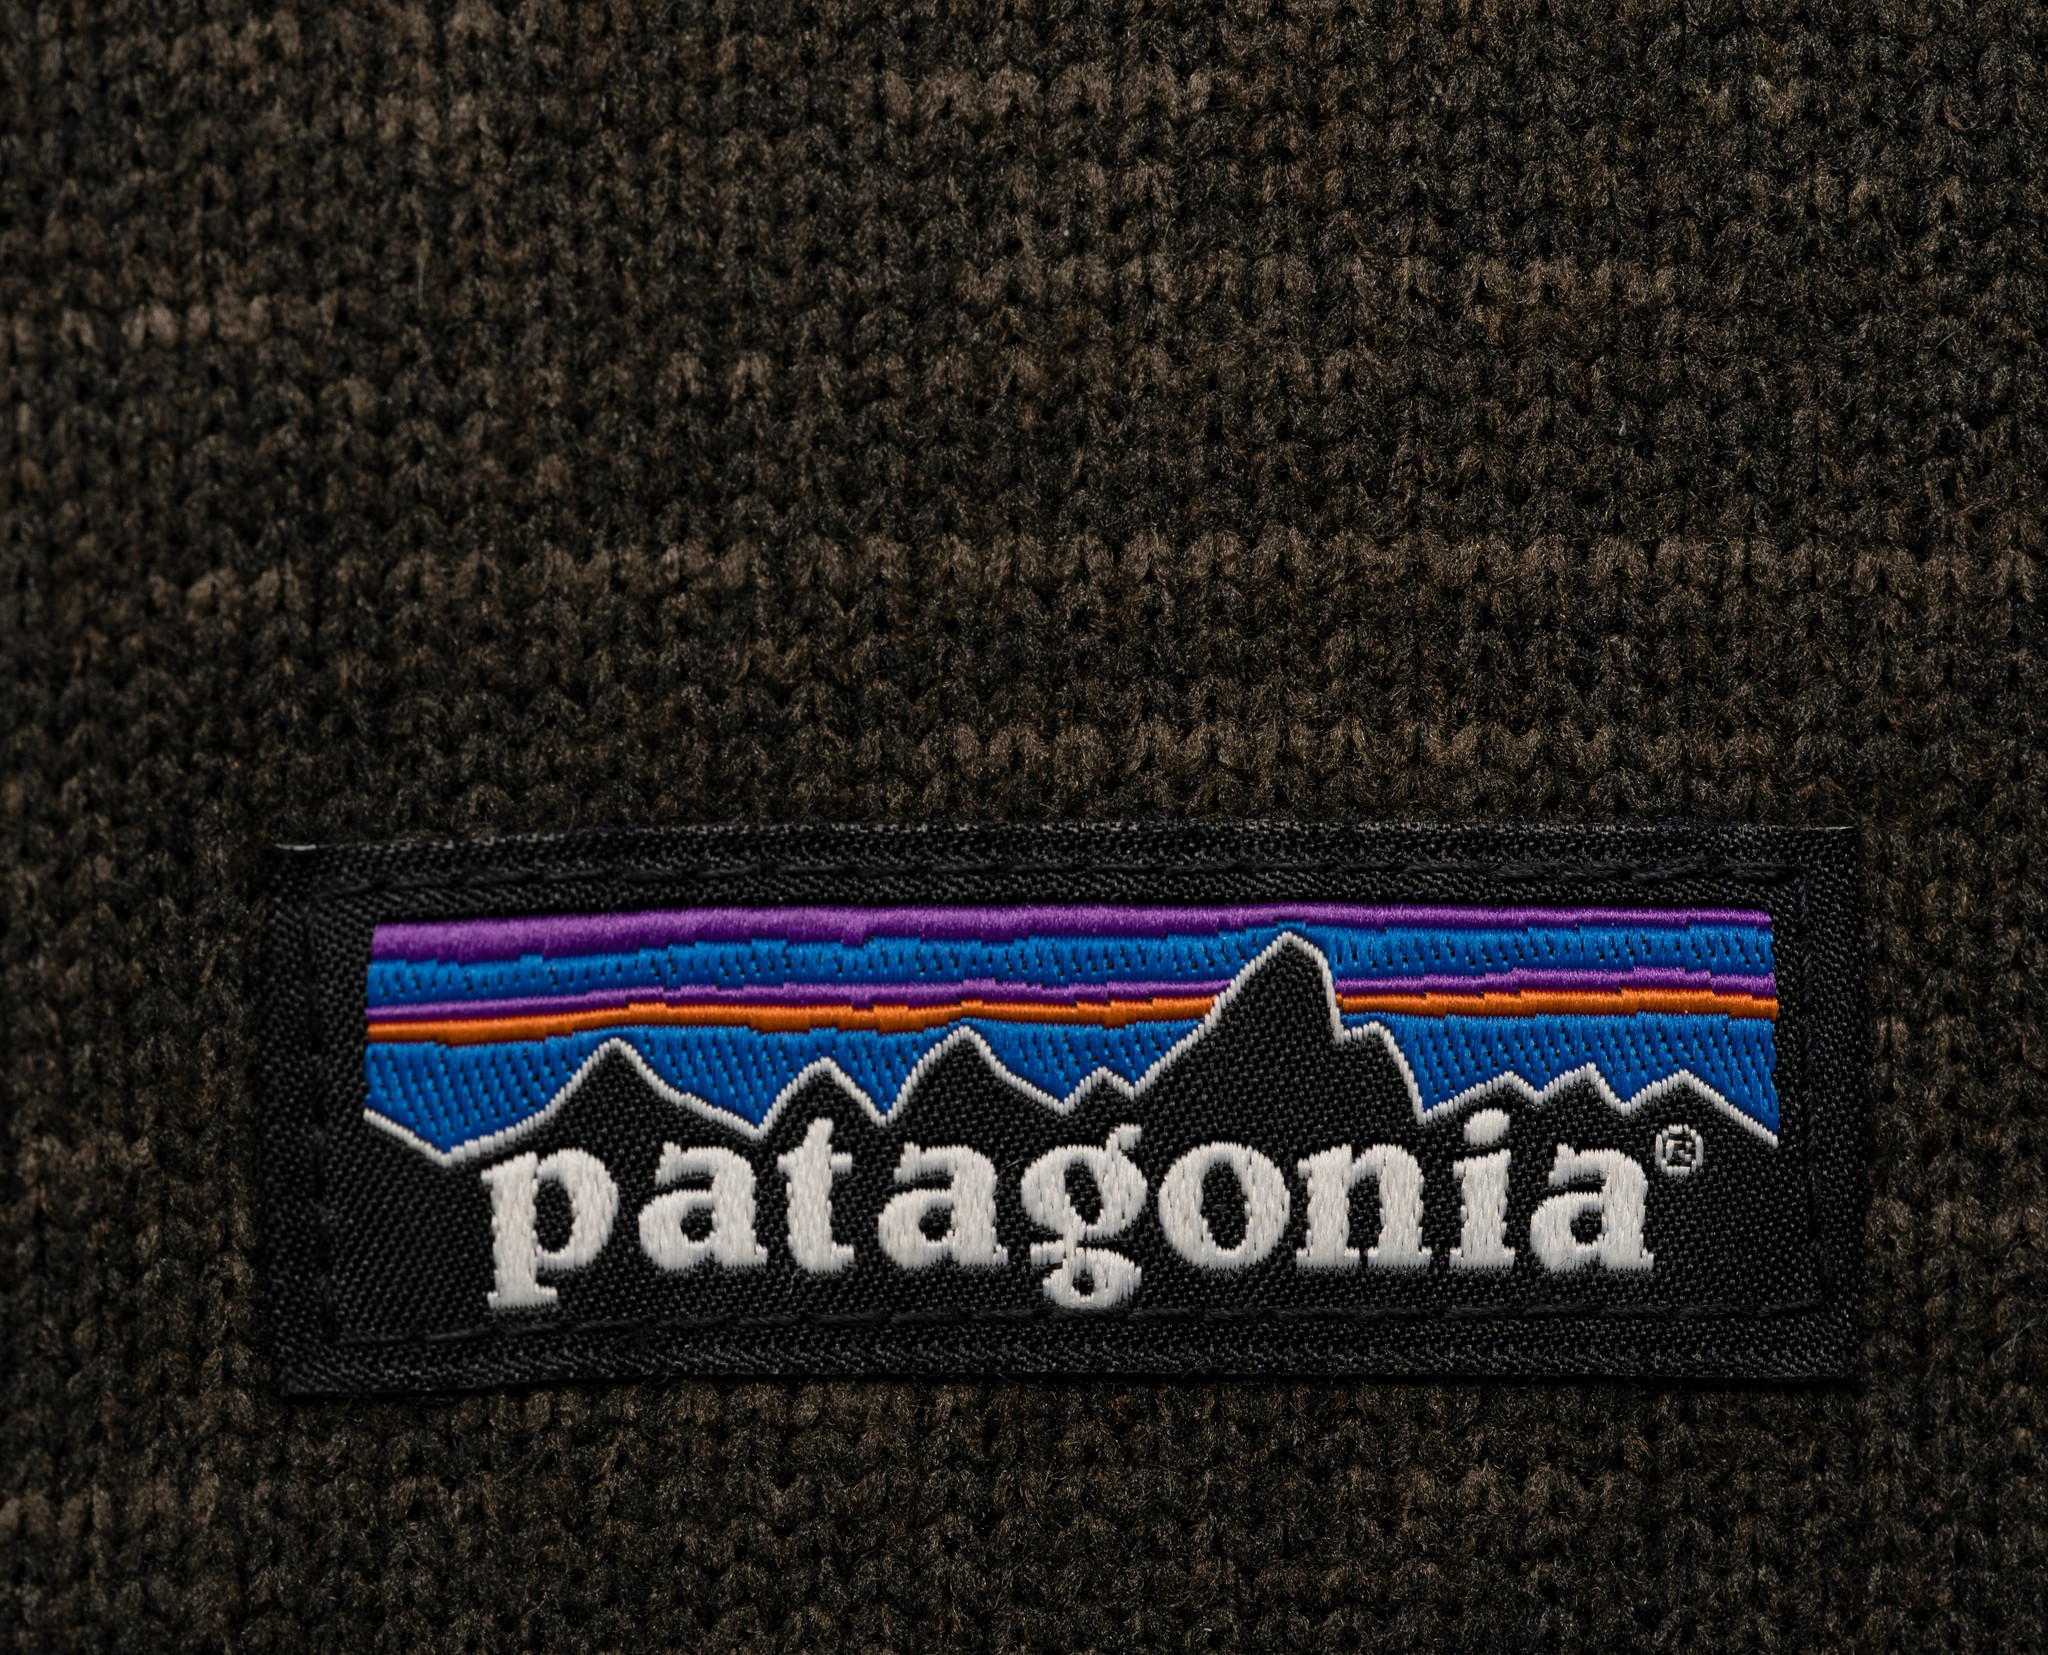 Patagonia sweater logo